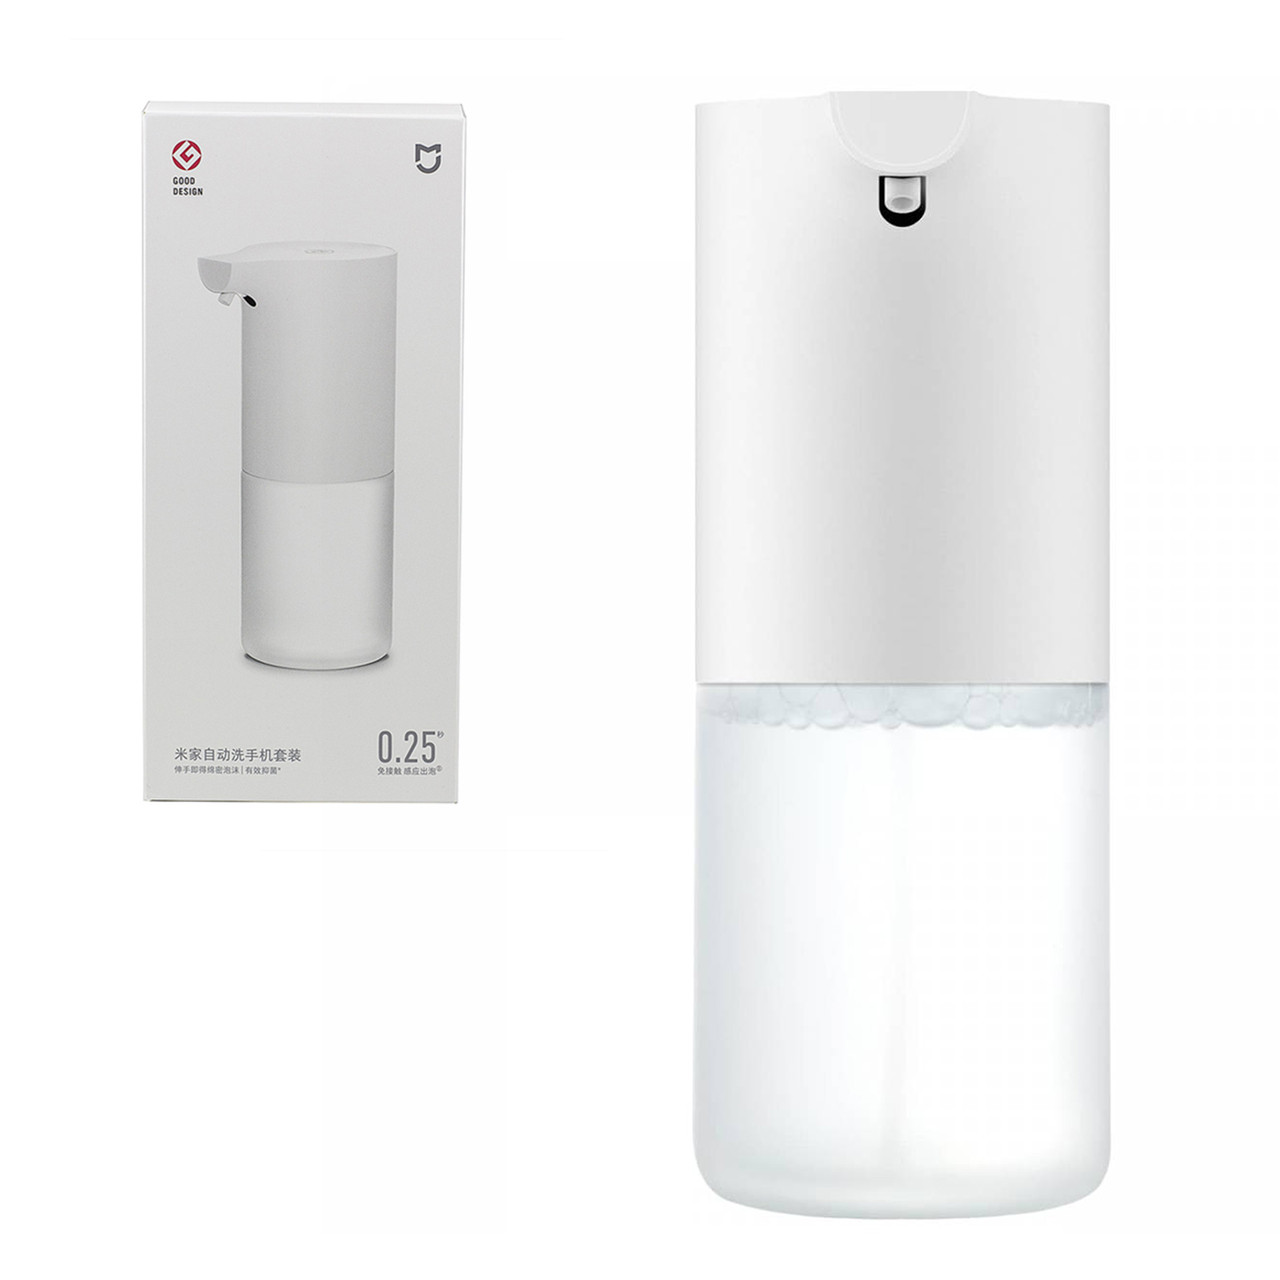 Сенсорная мыльница Xiaomi Mi Mijia Foam Soap Dispenser, (MJXSJ03XW), 320ml, White